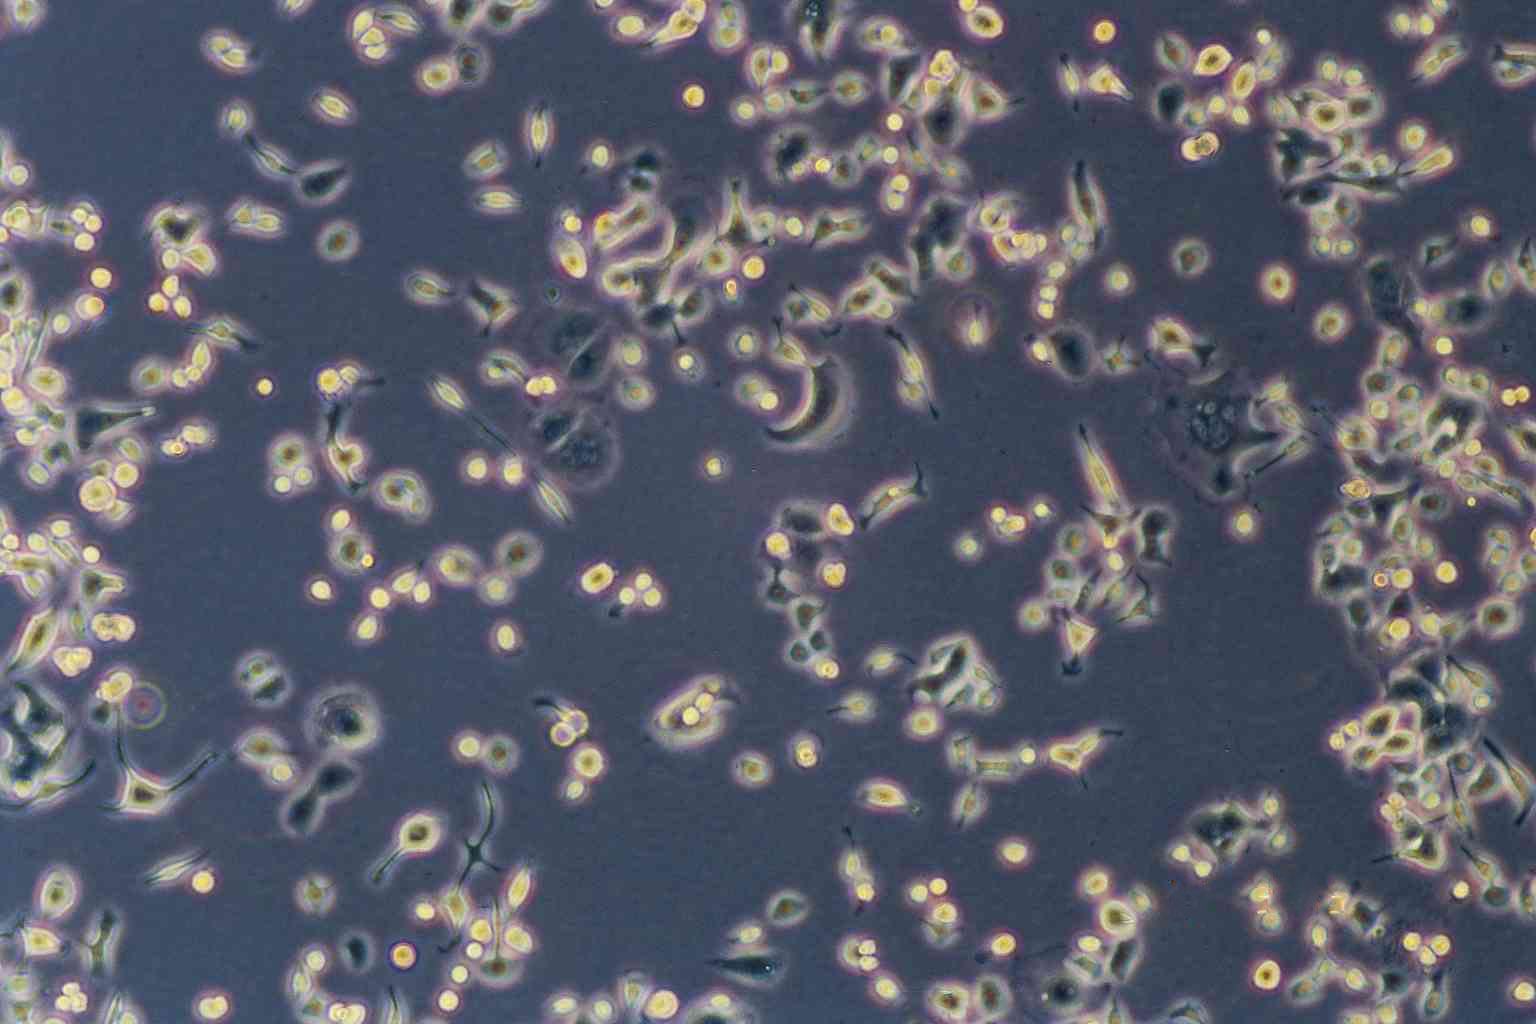 CTLA4 Ig-24 epithelioid cells中国仓鼠卵巢细胞系,CTLA4 Ig-24 epithelioid cells